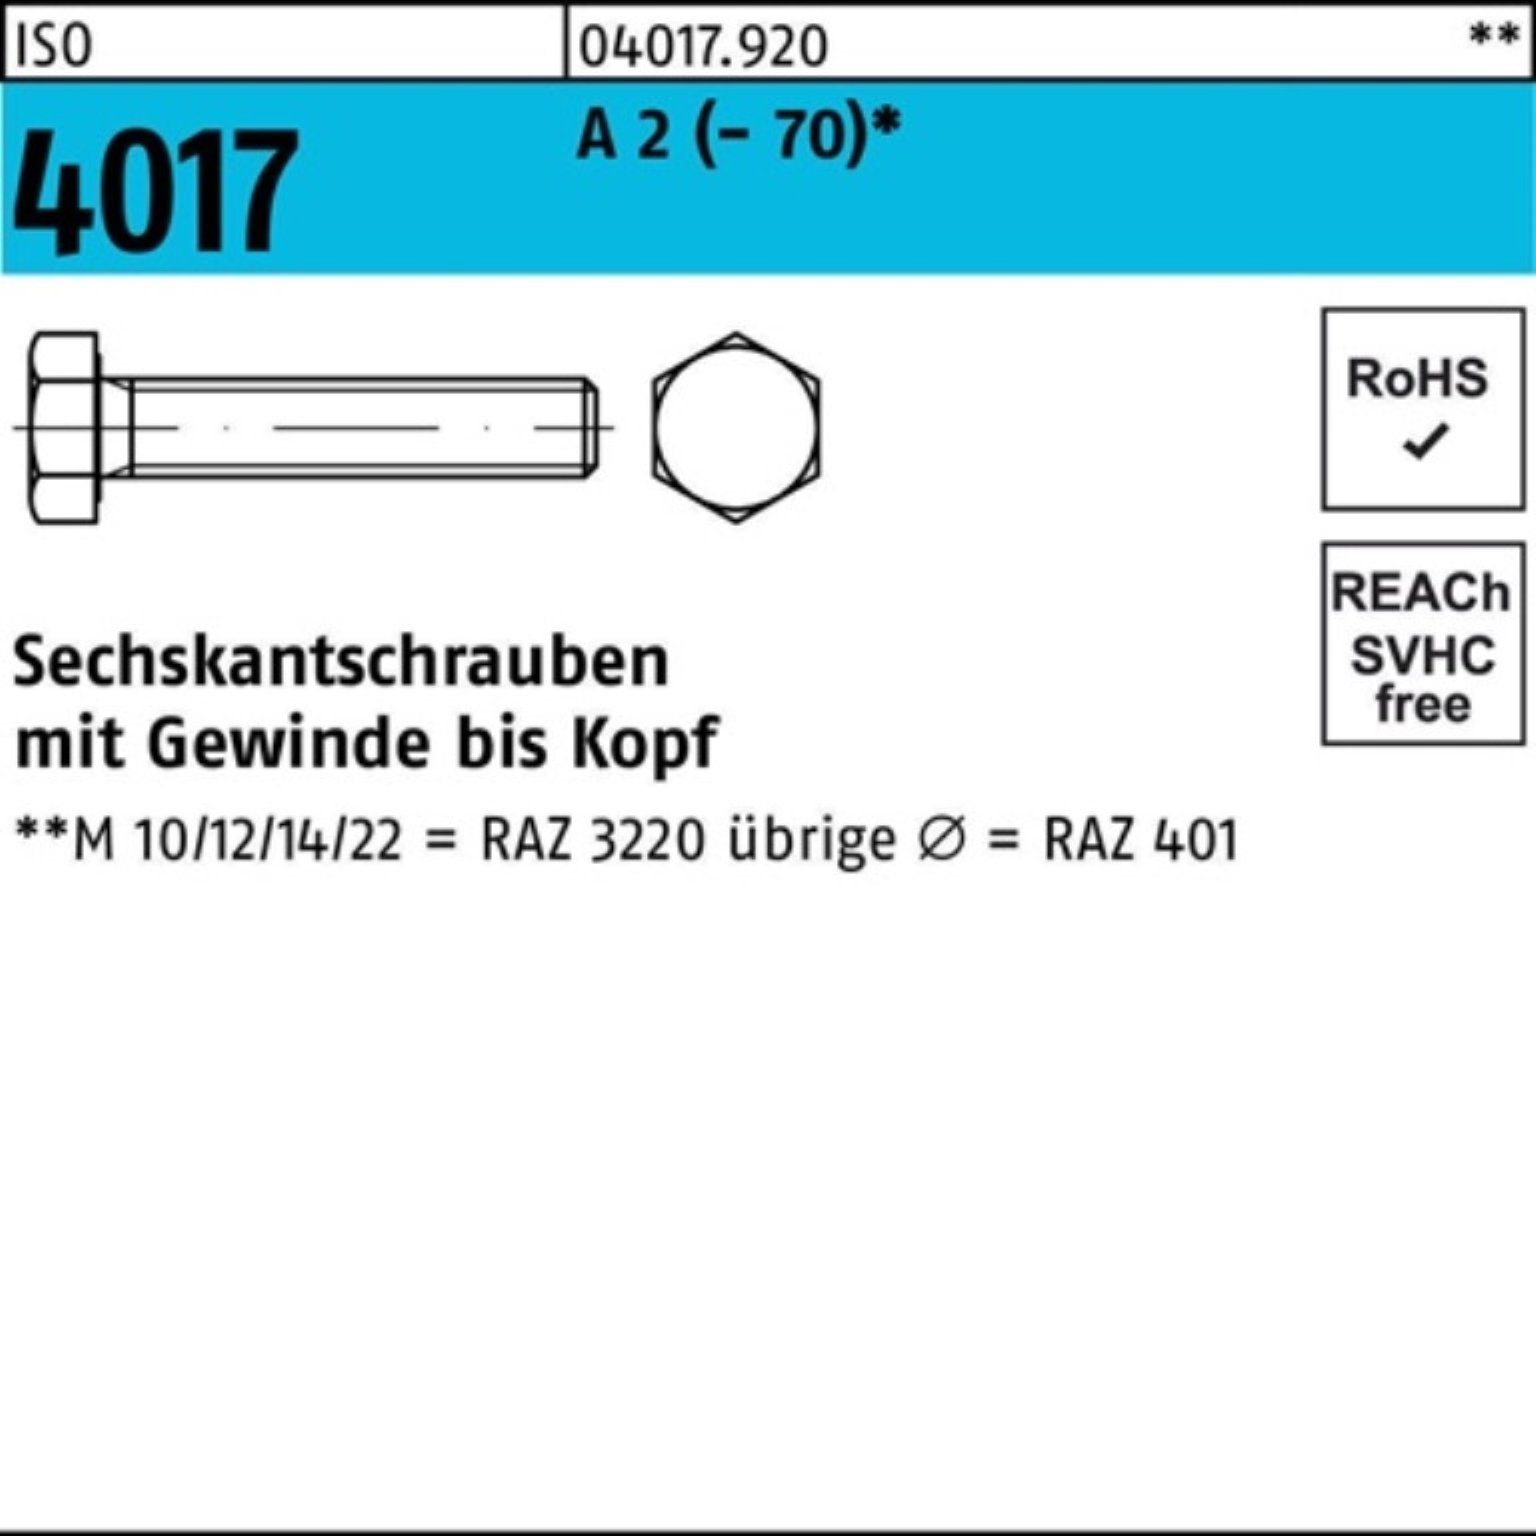 Bufab Sechskantschraube 100er Pack Sechskantschraube ISO 4017 VG M10x 55 A 2 (70) 100 Stück